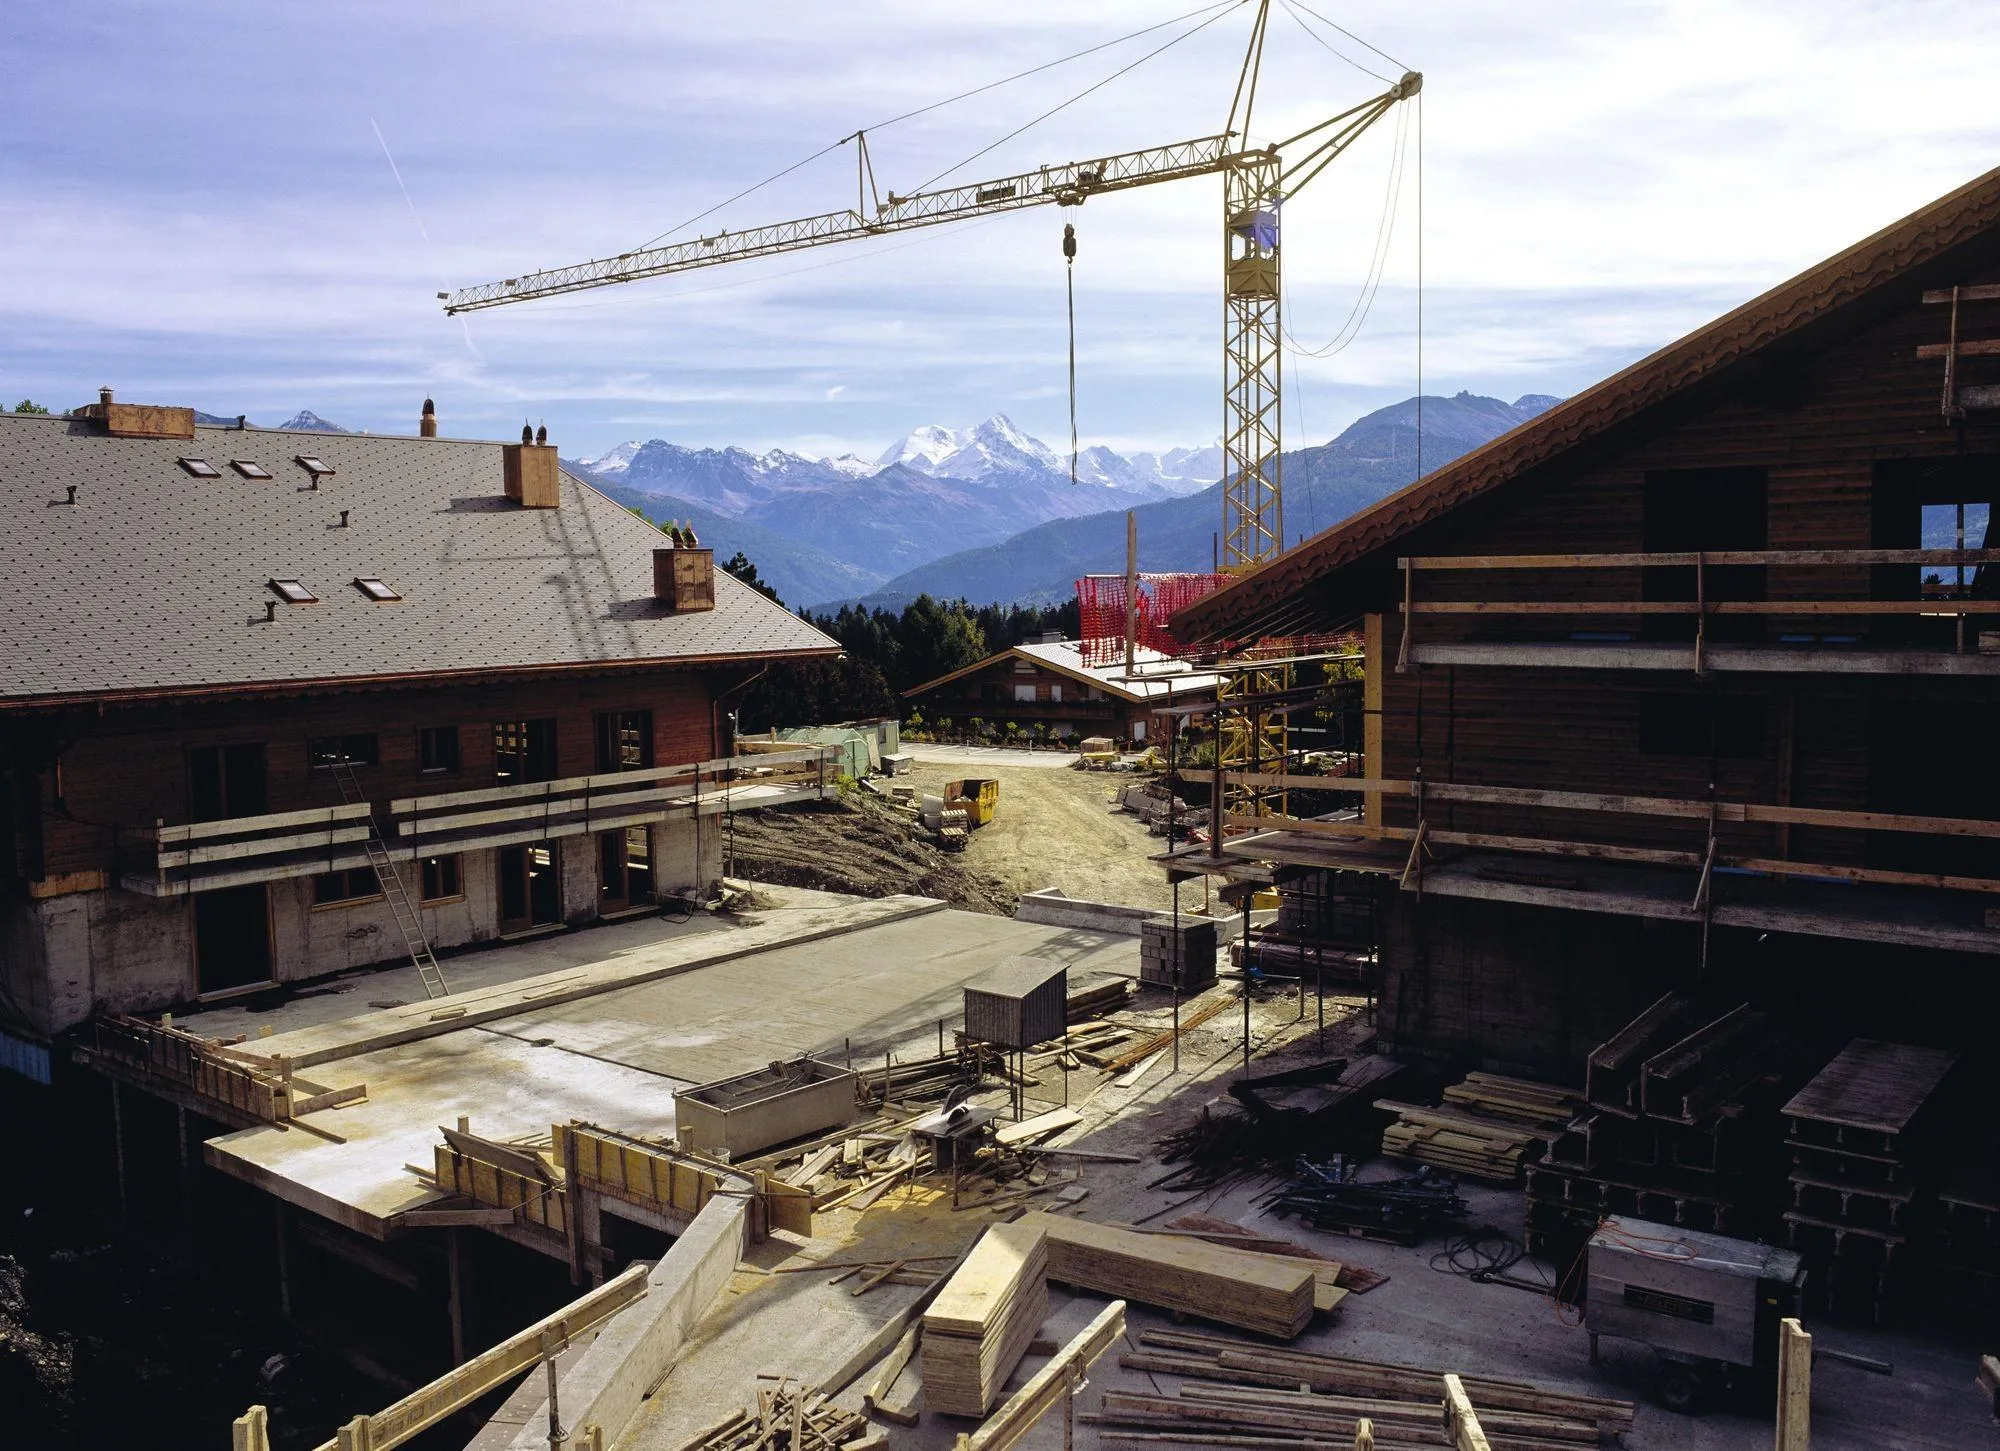 Construction d'un village de vacances dans les Alpes suisses. Cela implique d'acheminer des matériaux et de créer des réseaux d'électricité, d'adduction d'eau, de traitement des eaux usées et des déchets